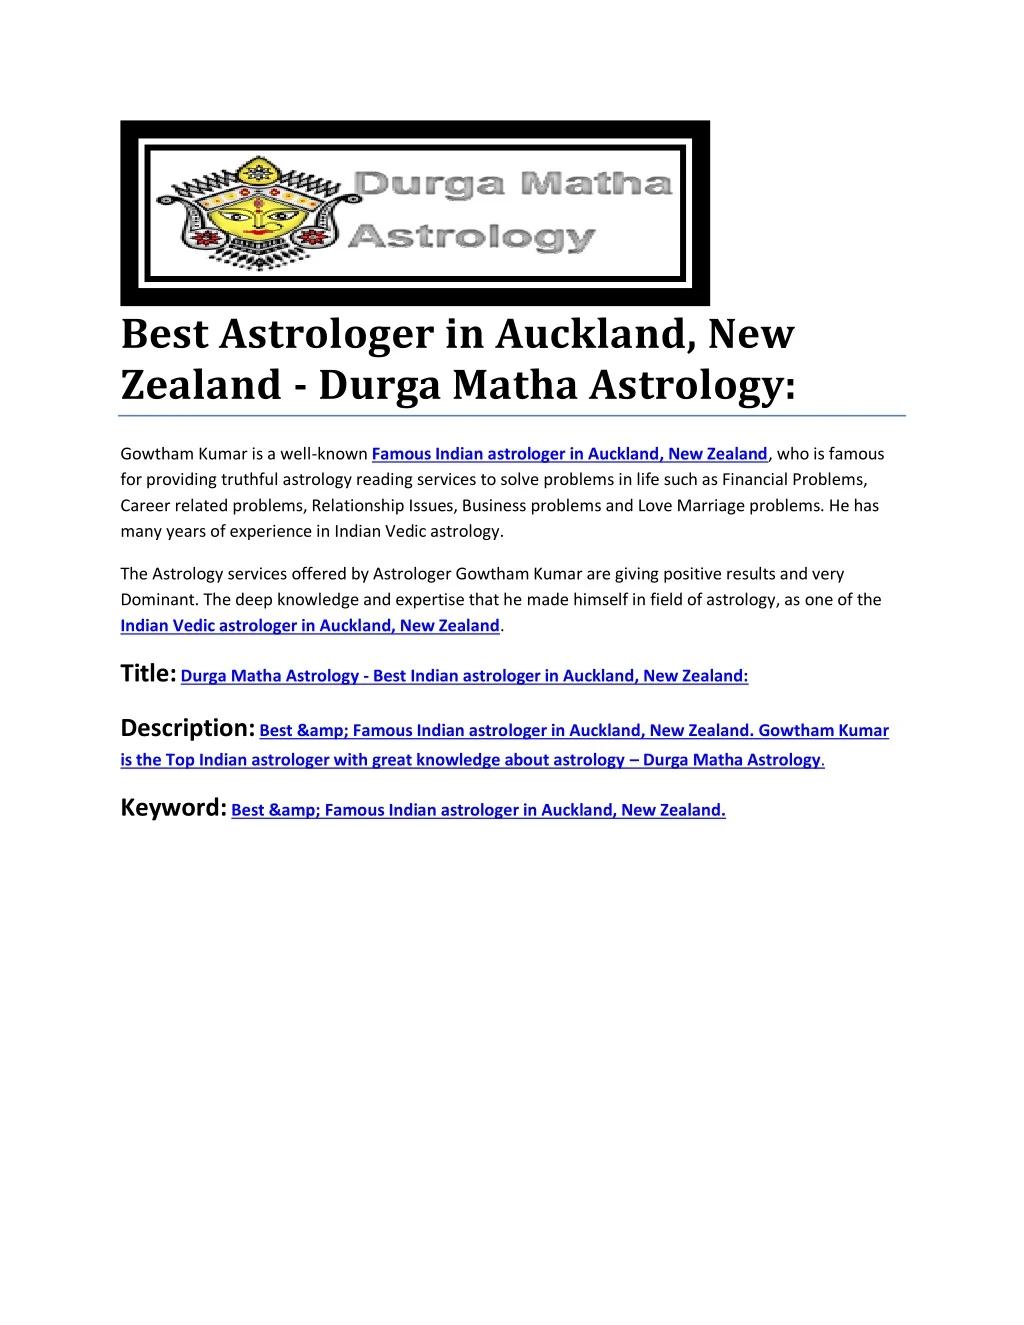 best astrologer in auckland new zealand durga